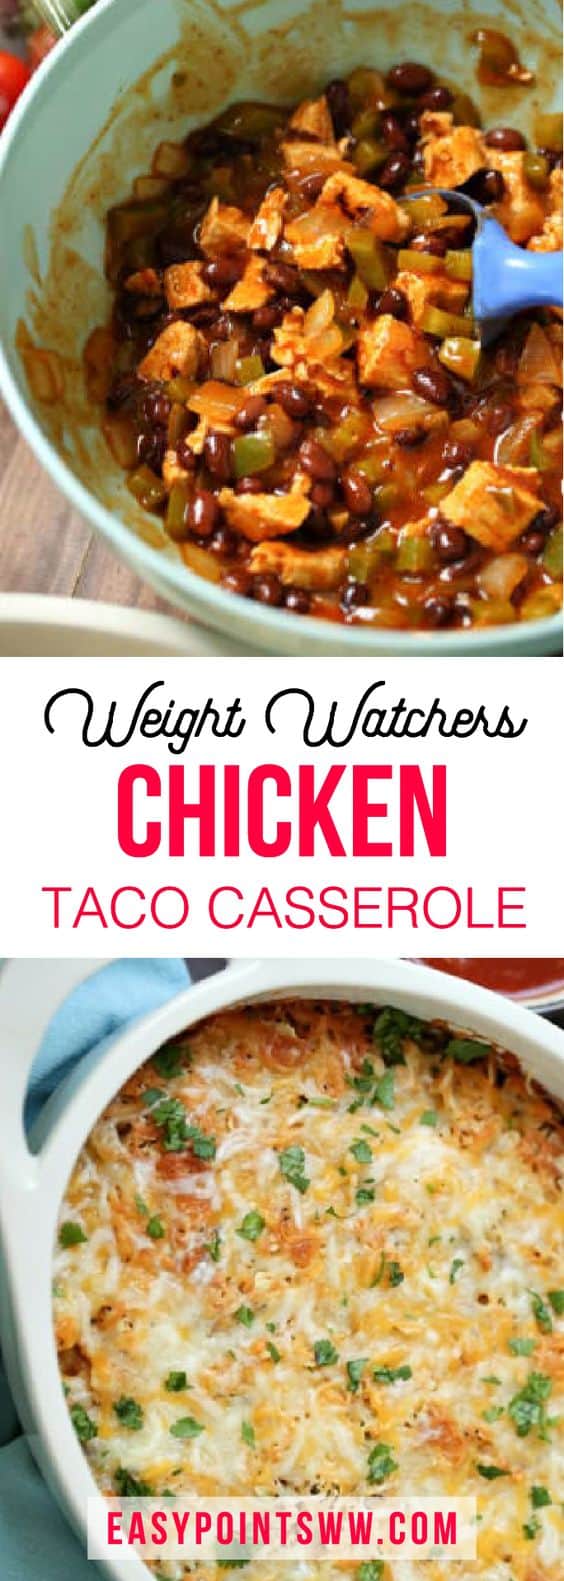 weight watchers casseroles recipes